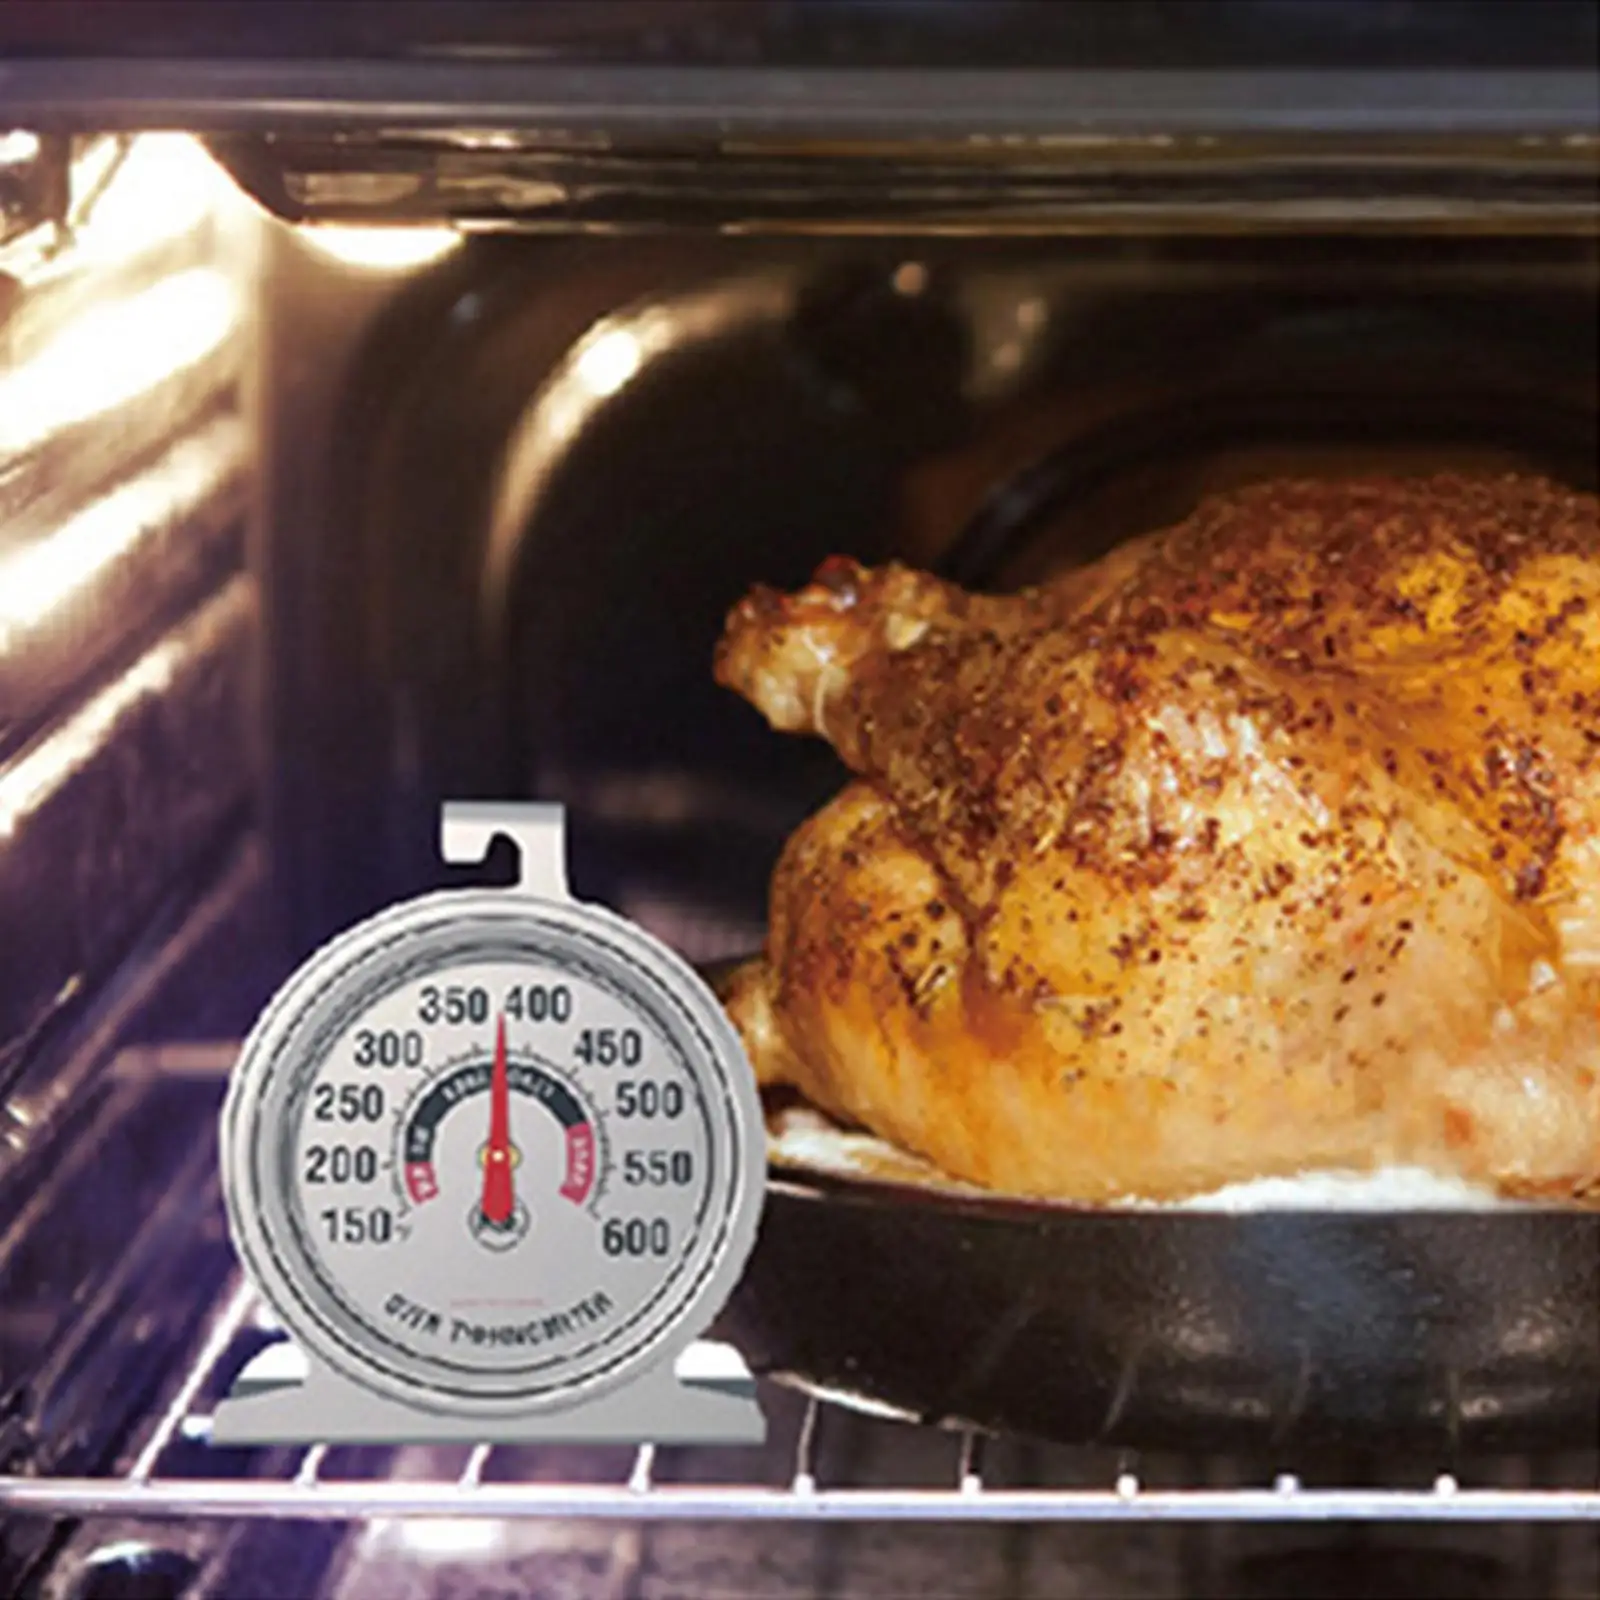 

Термометр для духовки, гриля, жарки, поварской термометр, мгновенное считывание 150-600 °F, большое количество, для кухни, выпечки